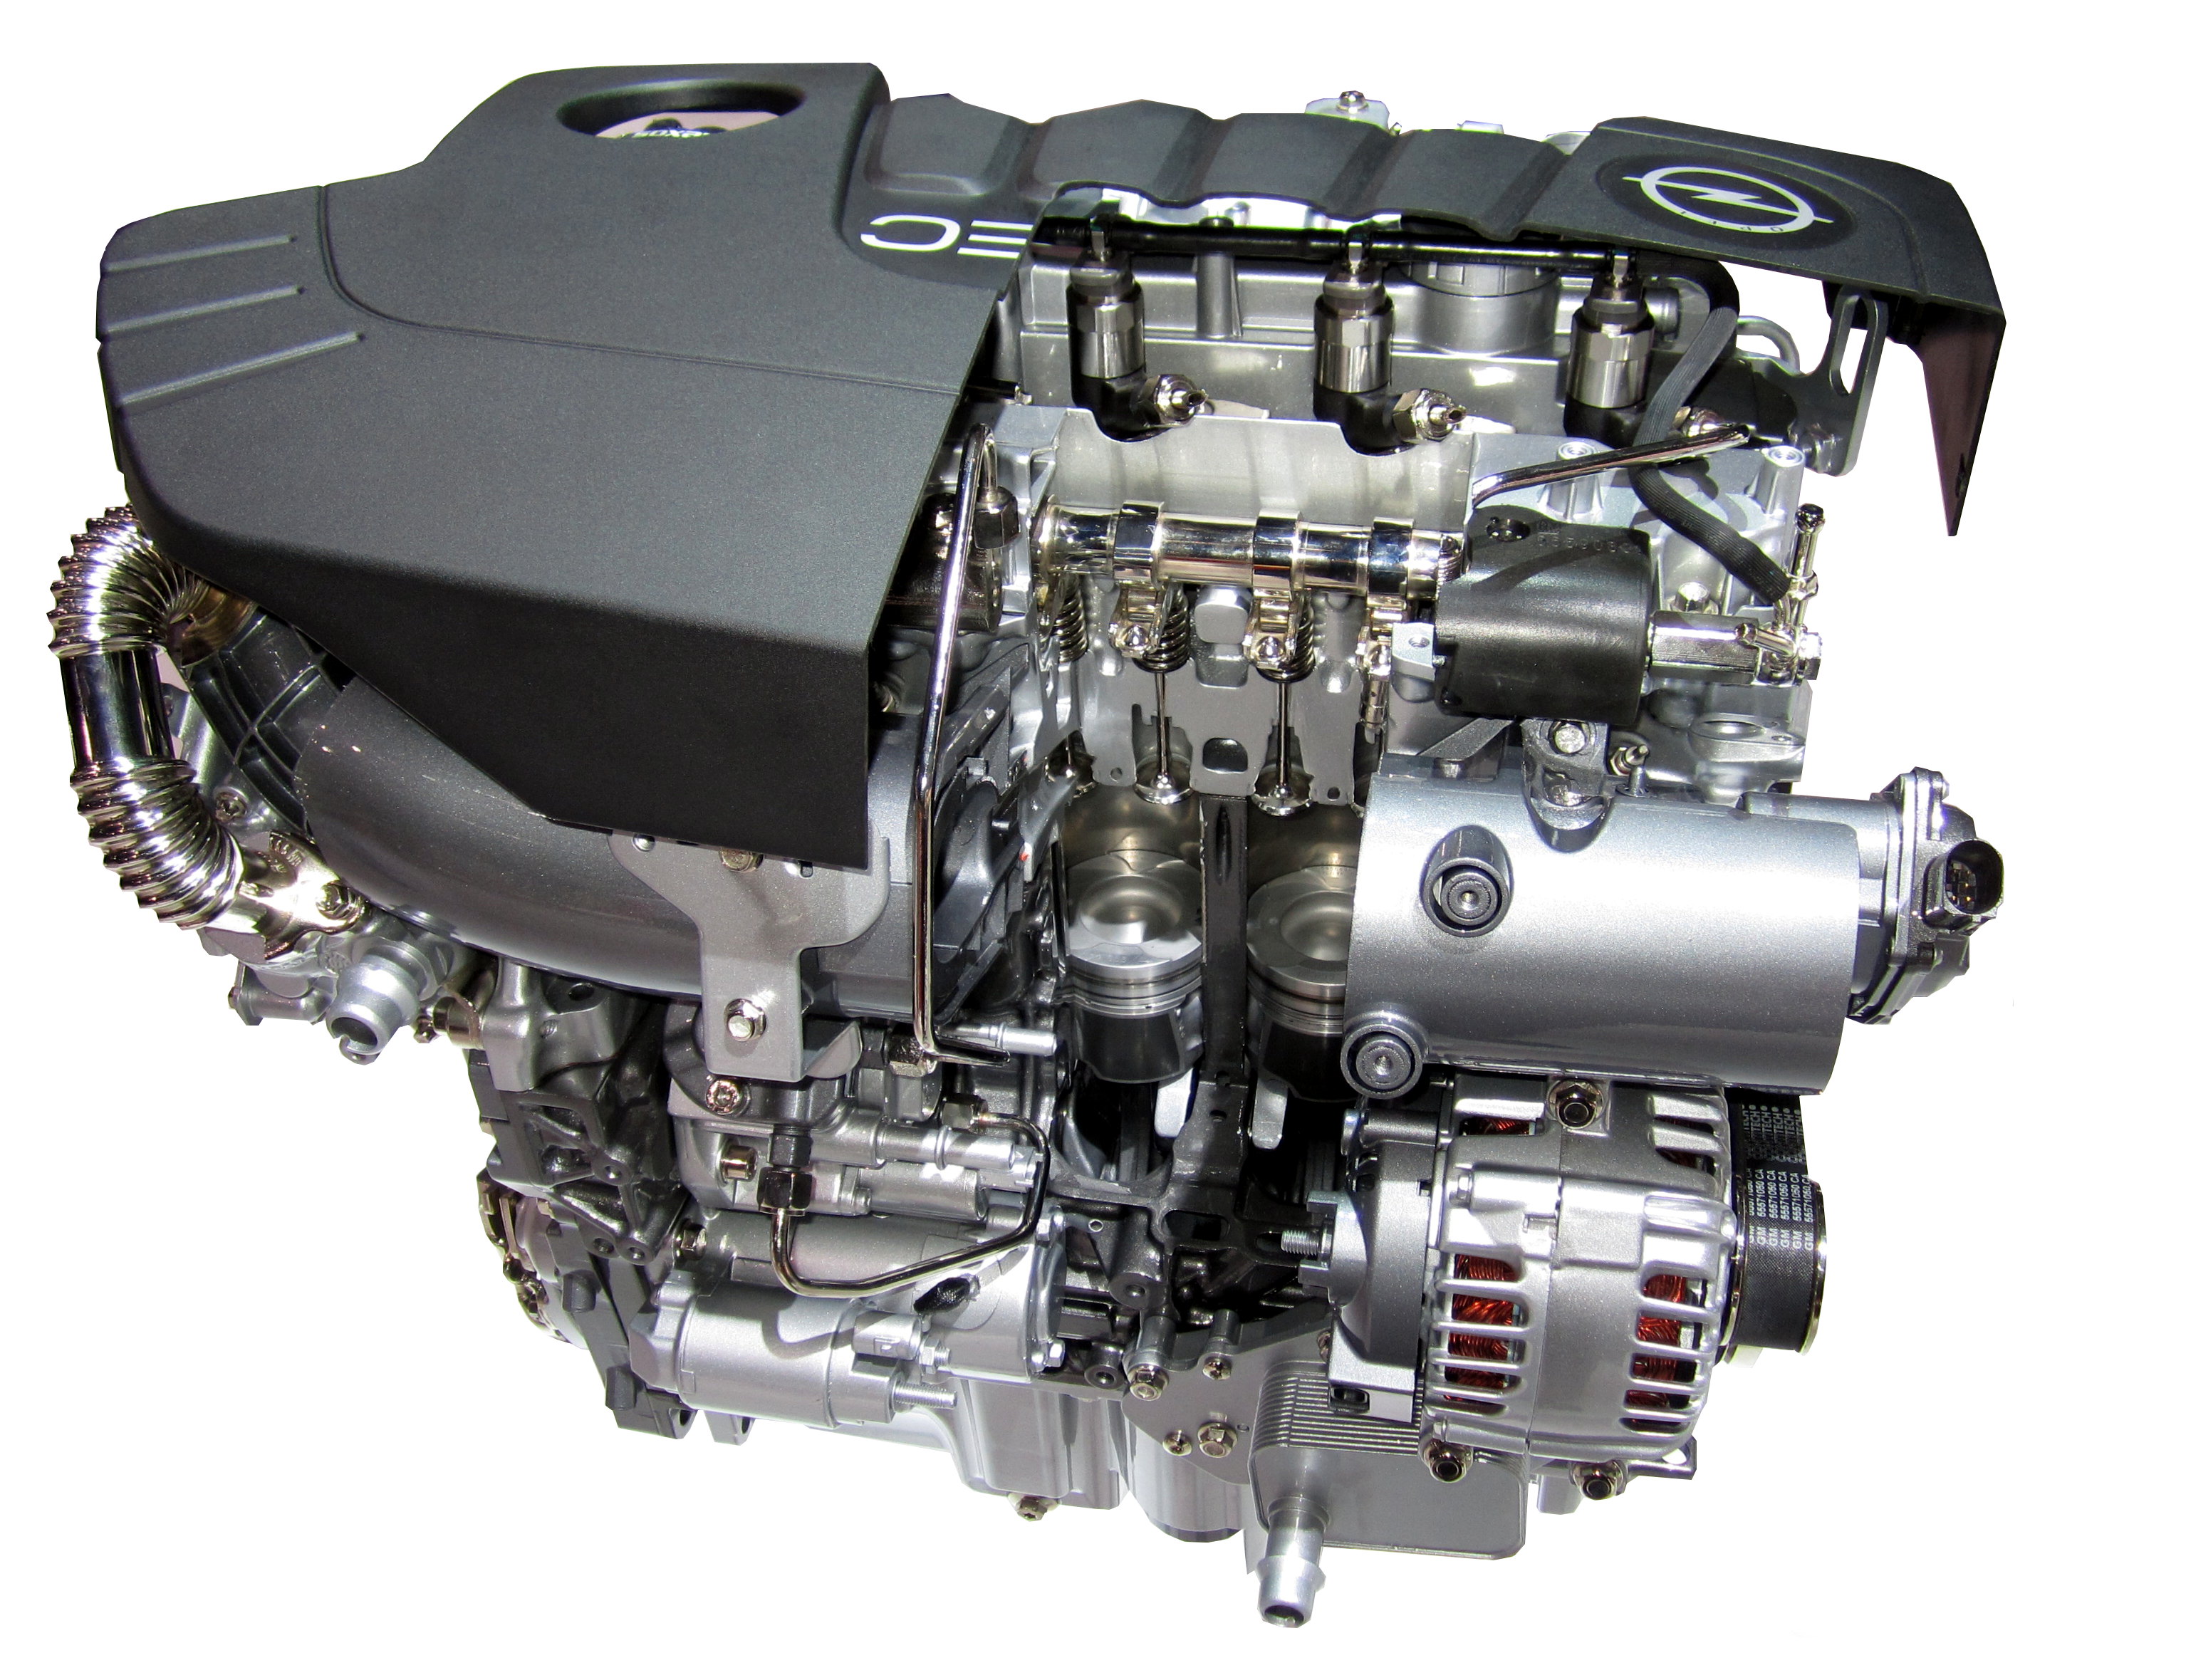 GM Medium Diesel engine - Wikipedia